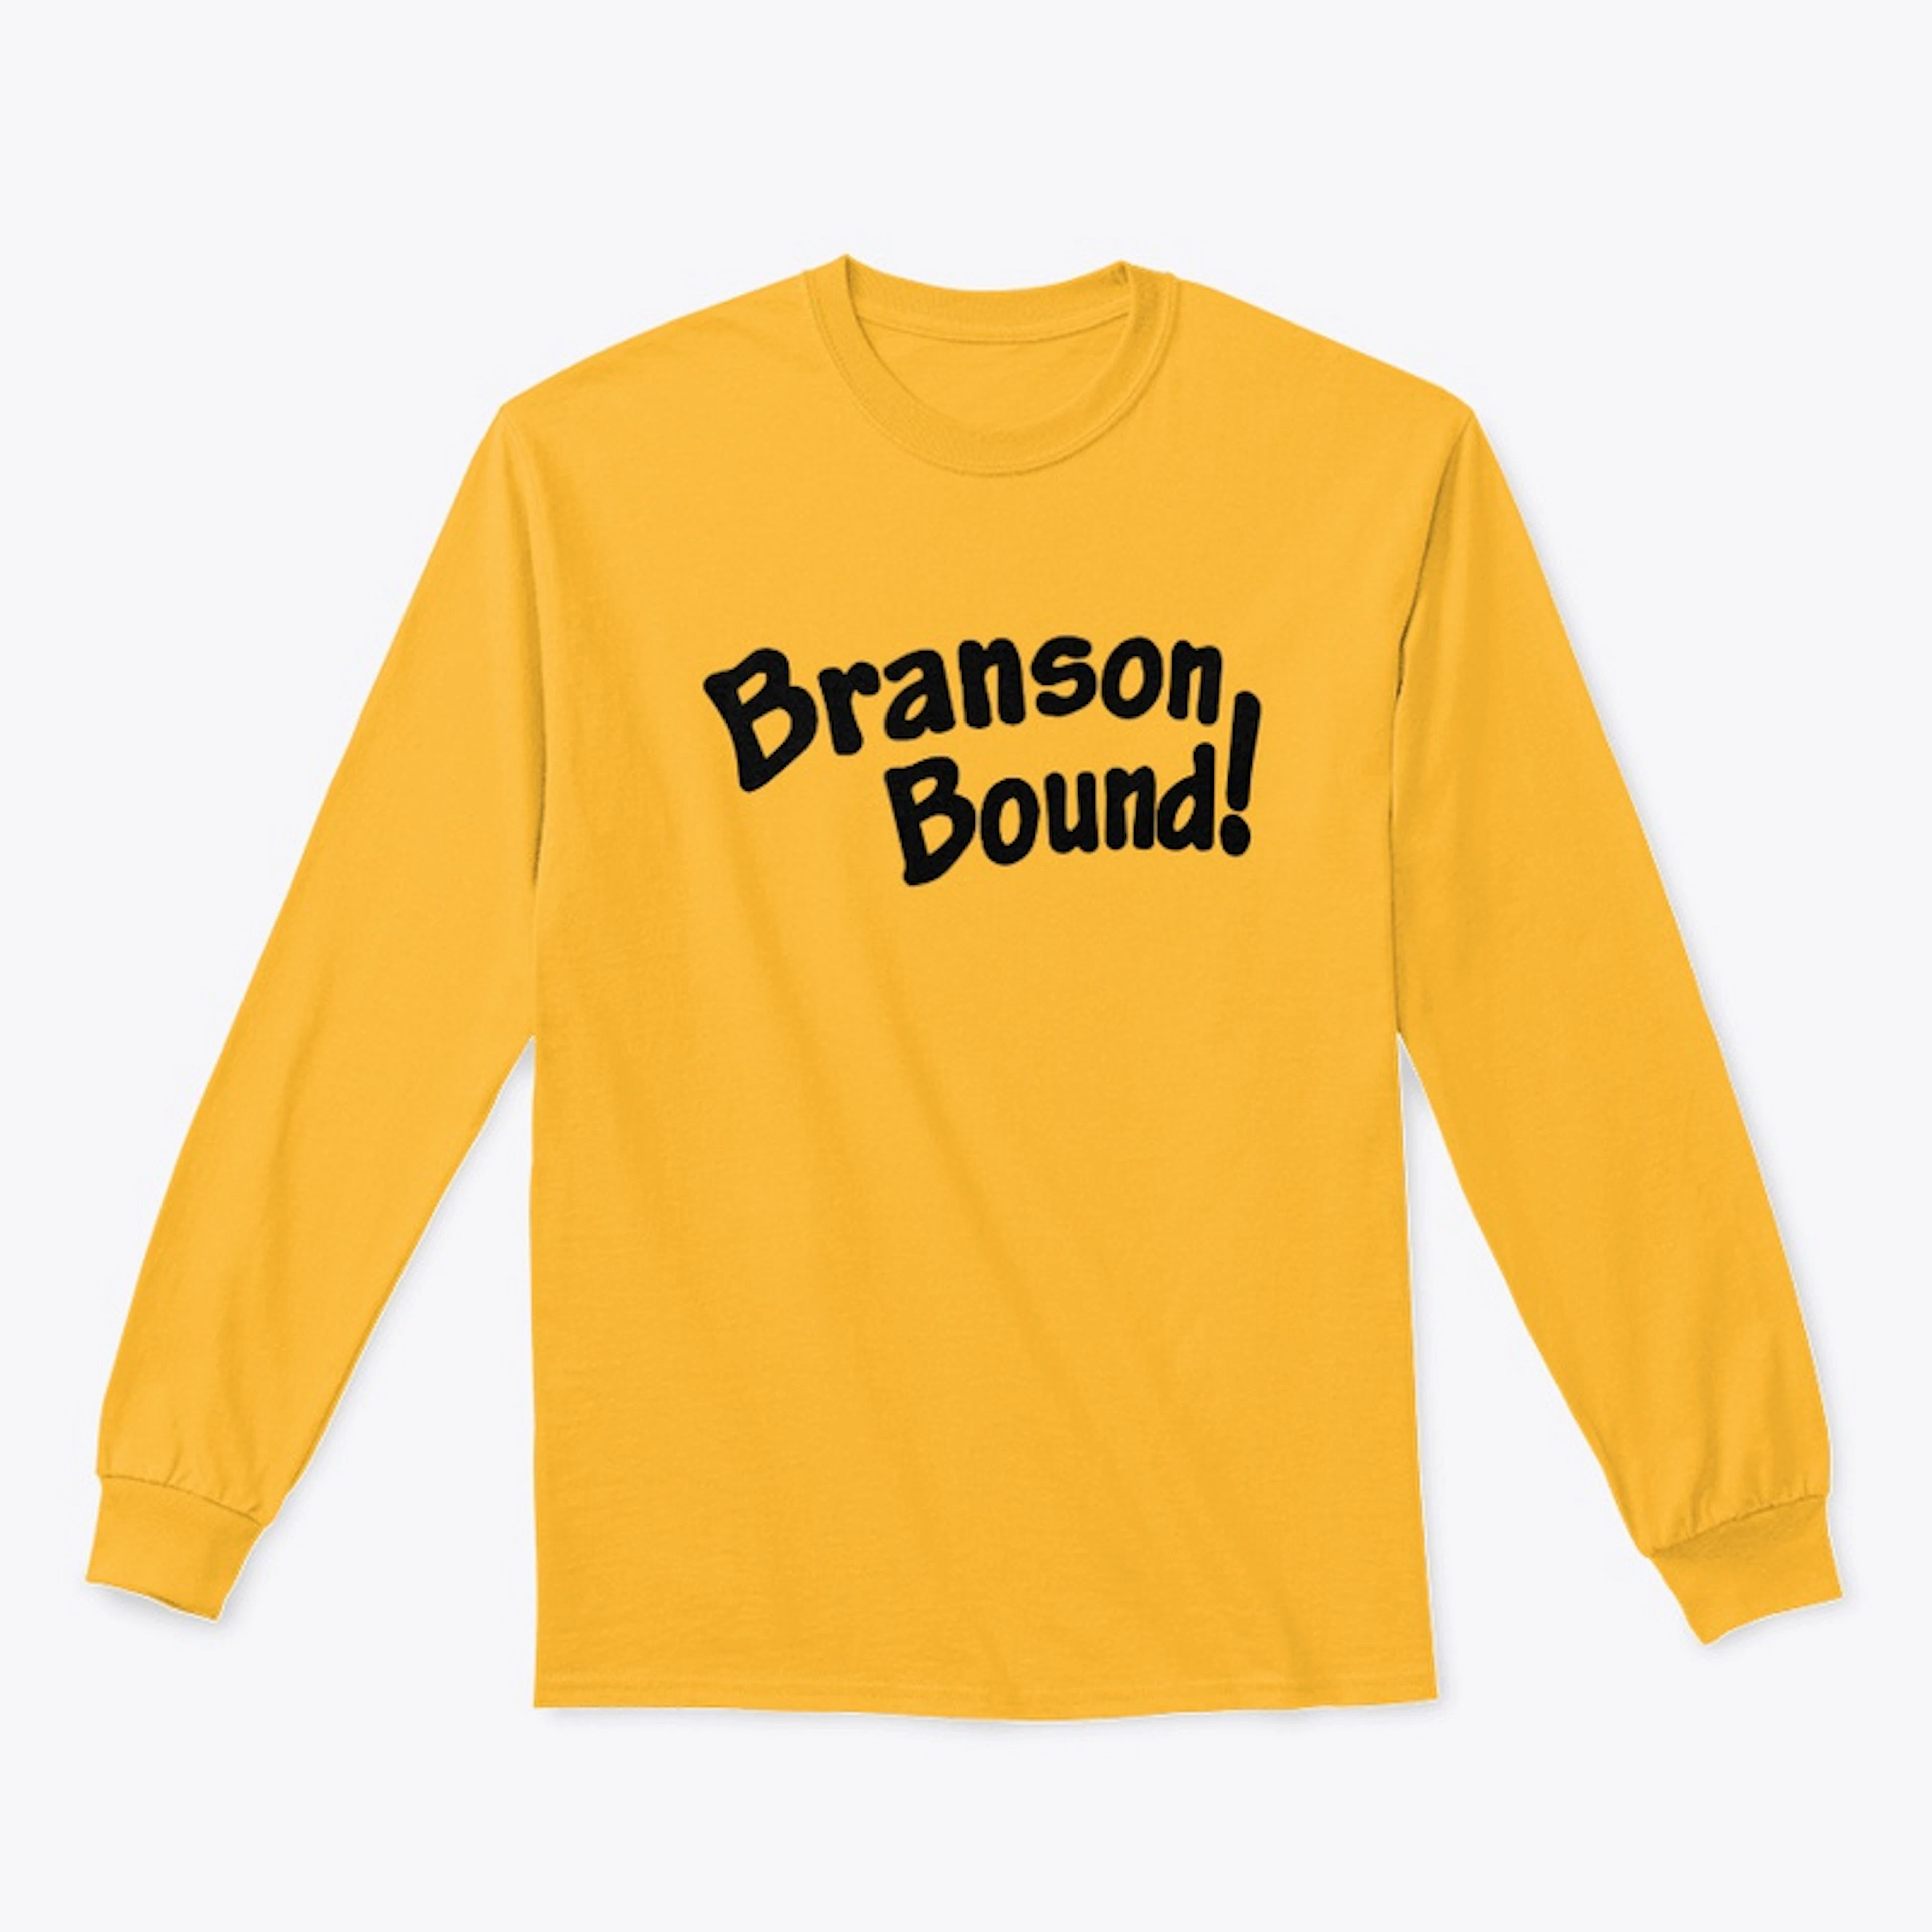 Branson Bound!